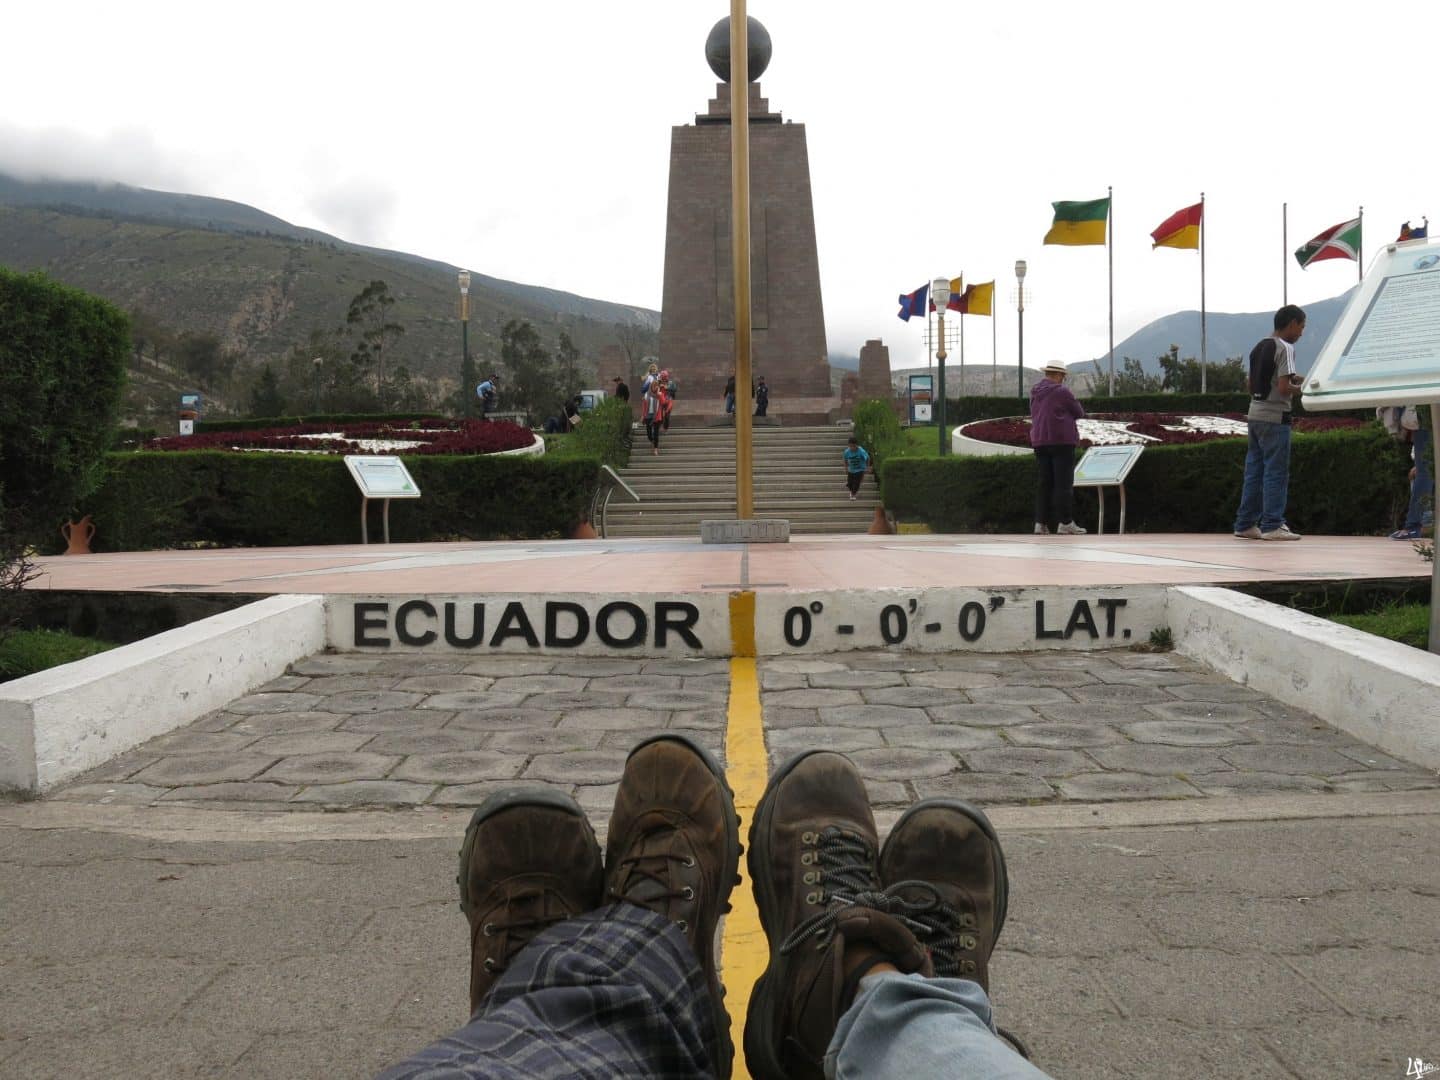 Linha do Equador - Conheça sua impôrtancia e origem